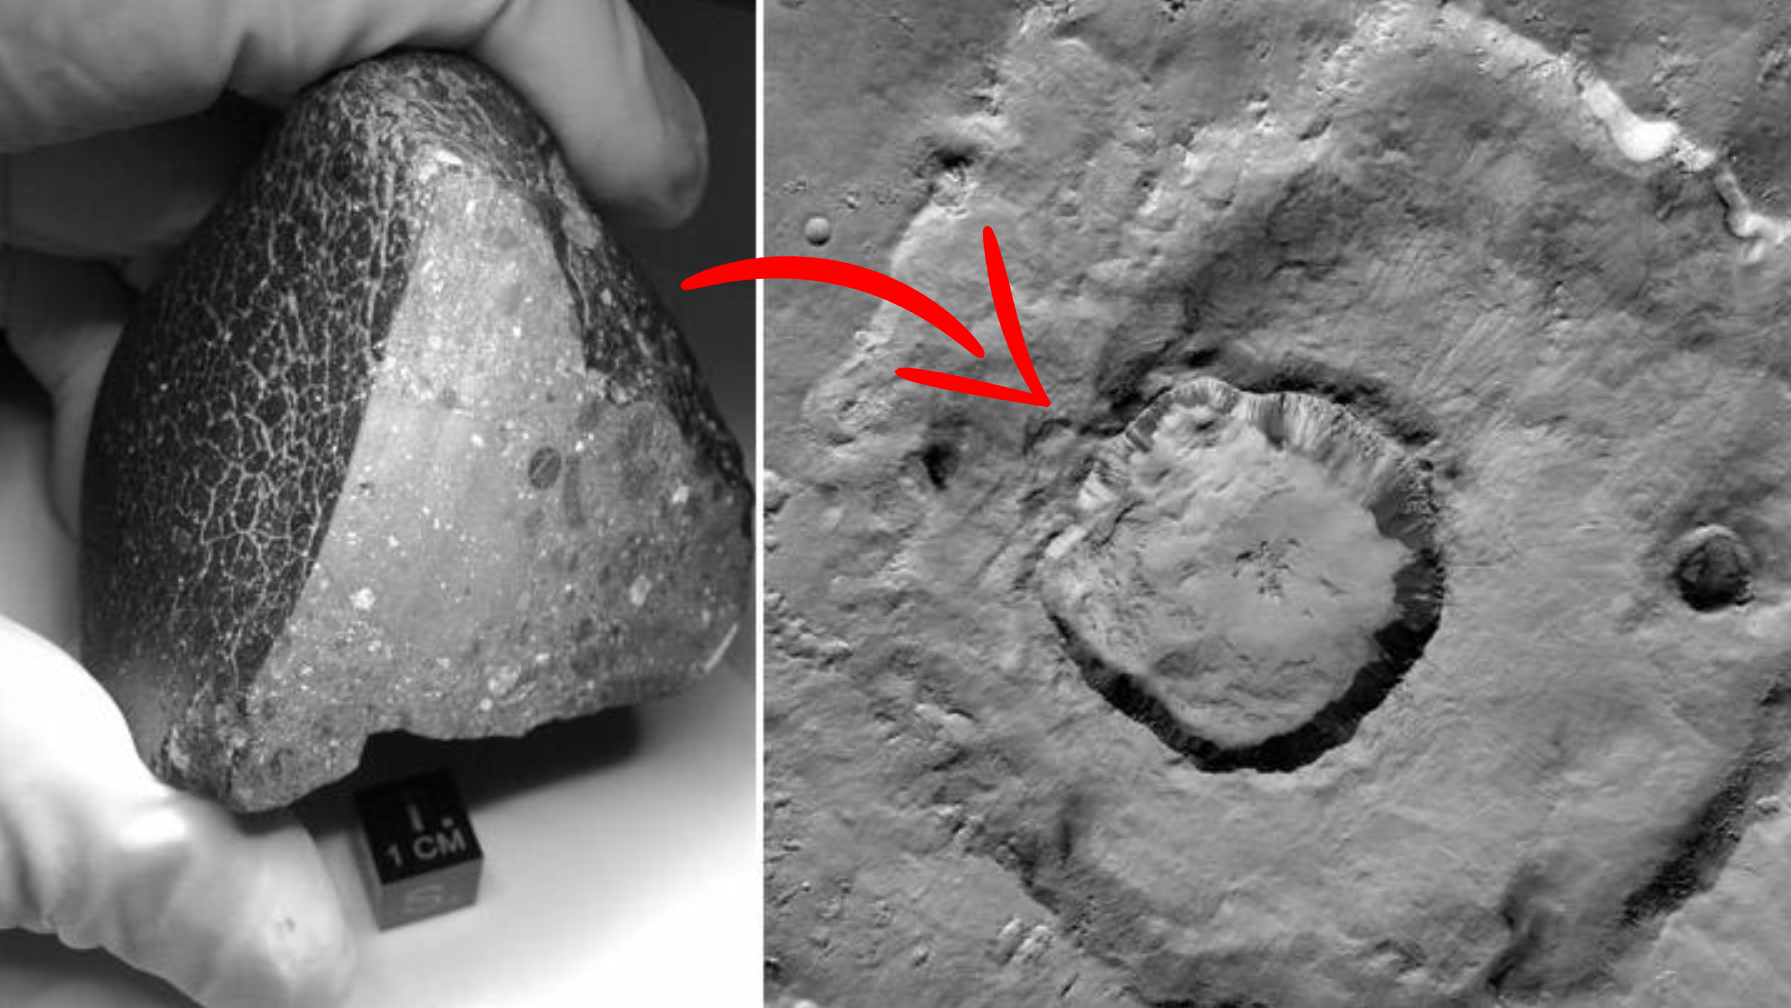 ИИ определил кратер на Красной планете, из которого вылетел знаменитый марсианский камень